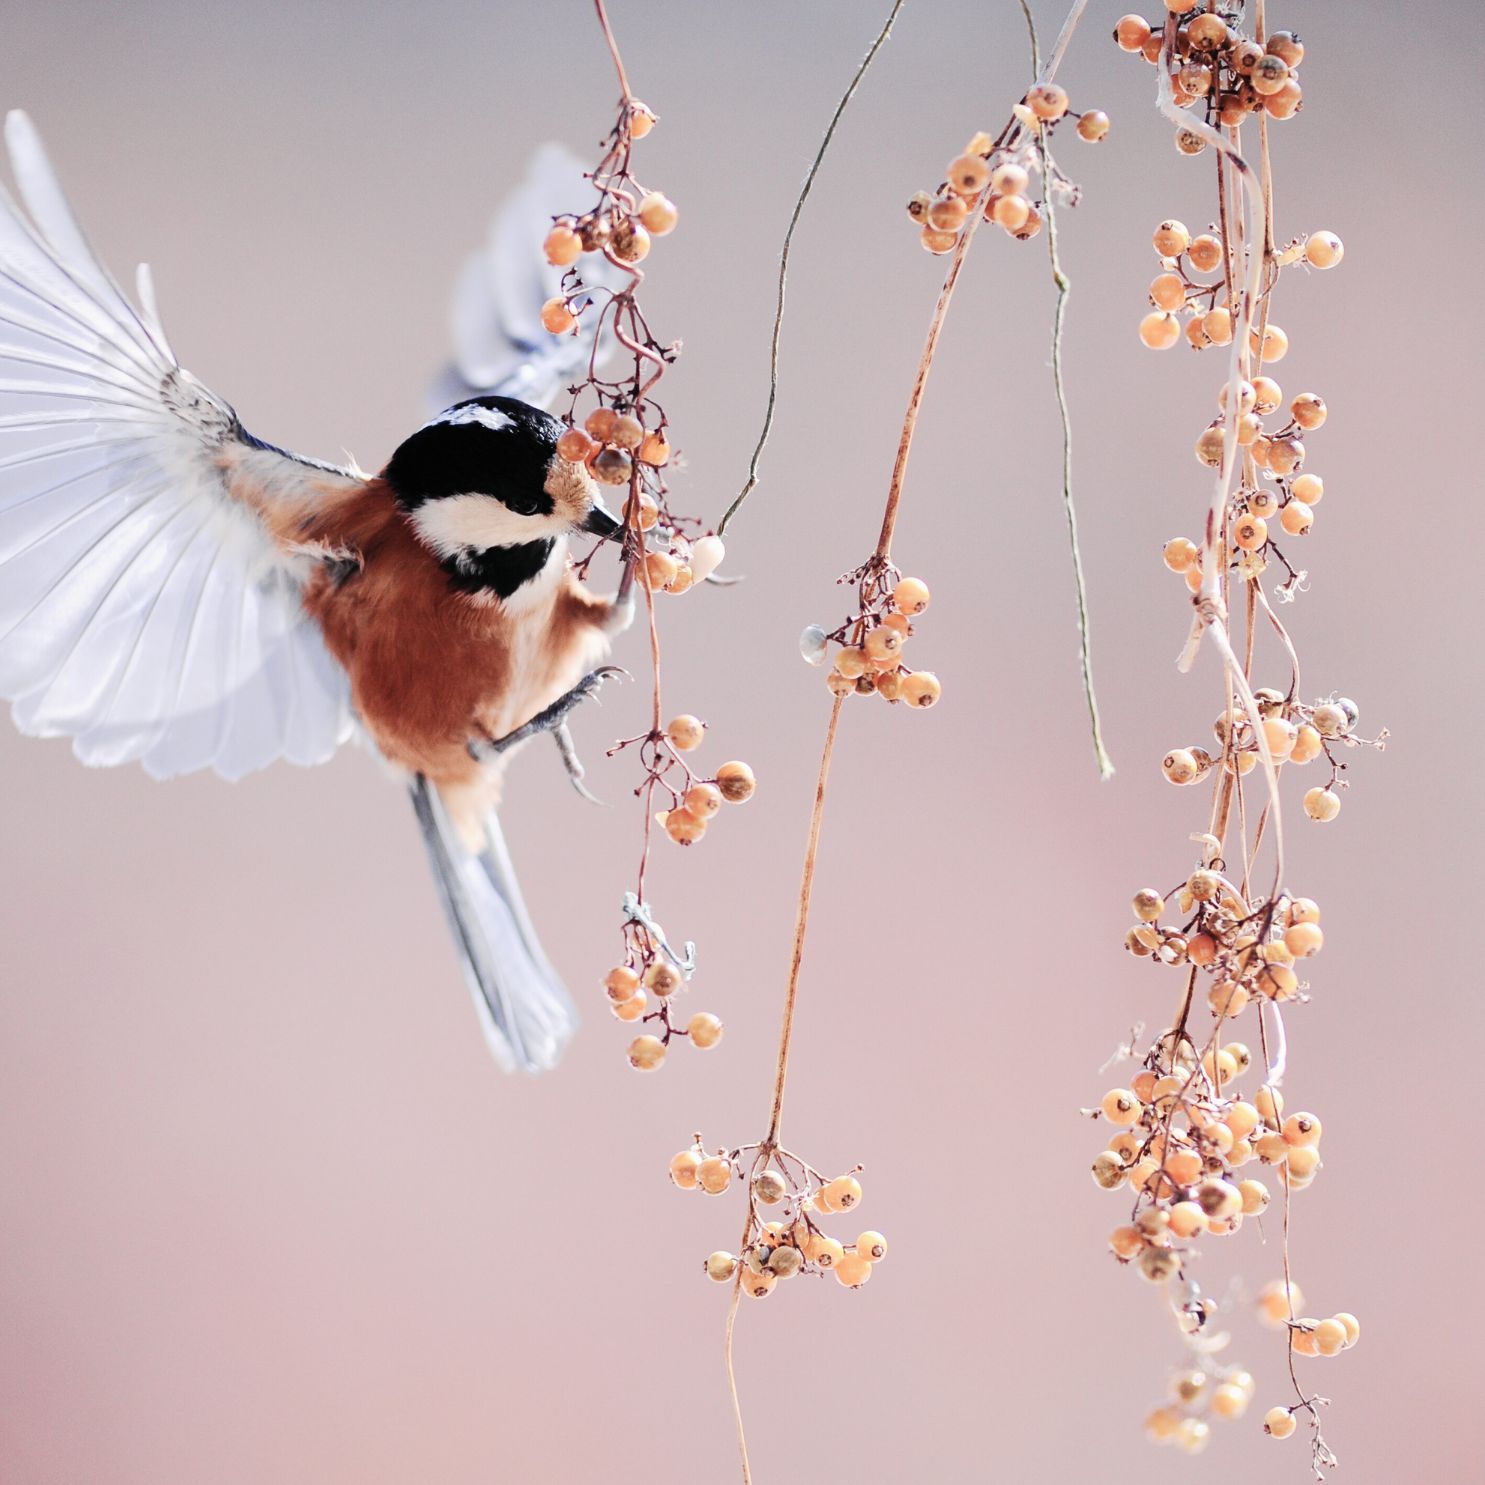 Der Gesang der Vögel: Naturgeräusche zum Abbau von Stress und Ängsten